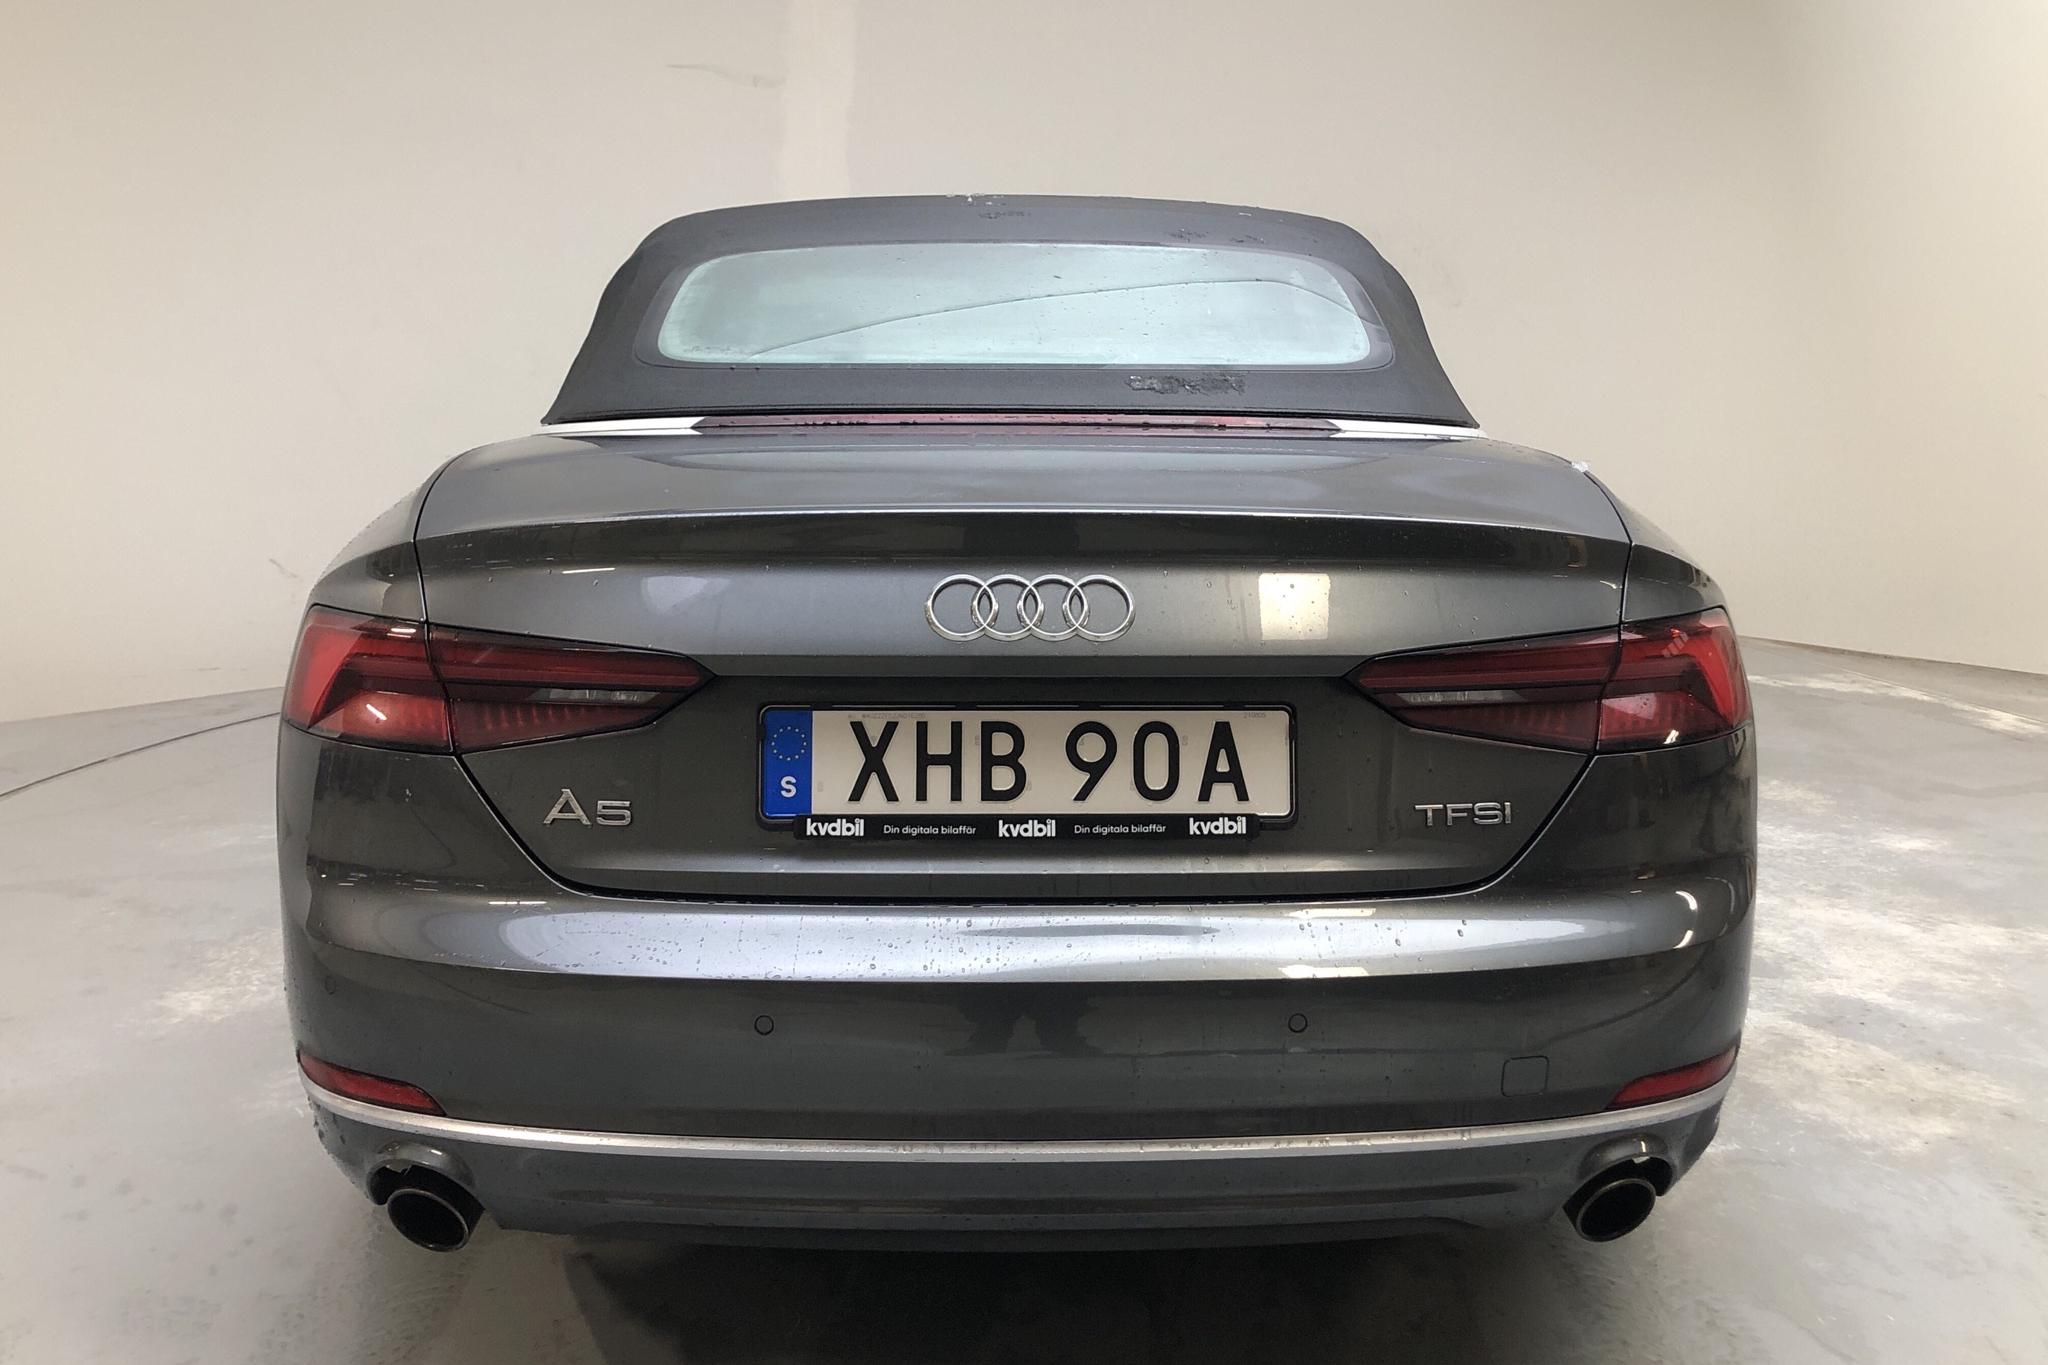 Audi A5 Cabriolet 2.0 TFSI (252hk) - 77 450 km - Automatic - gray - 2018